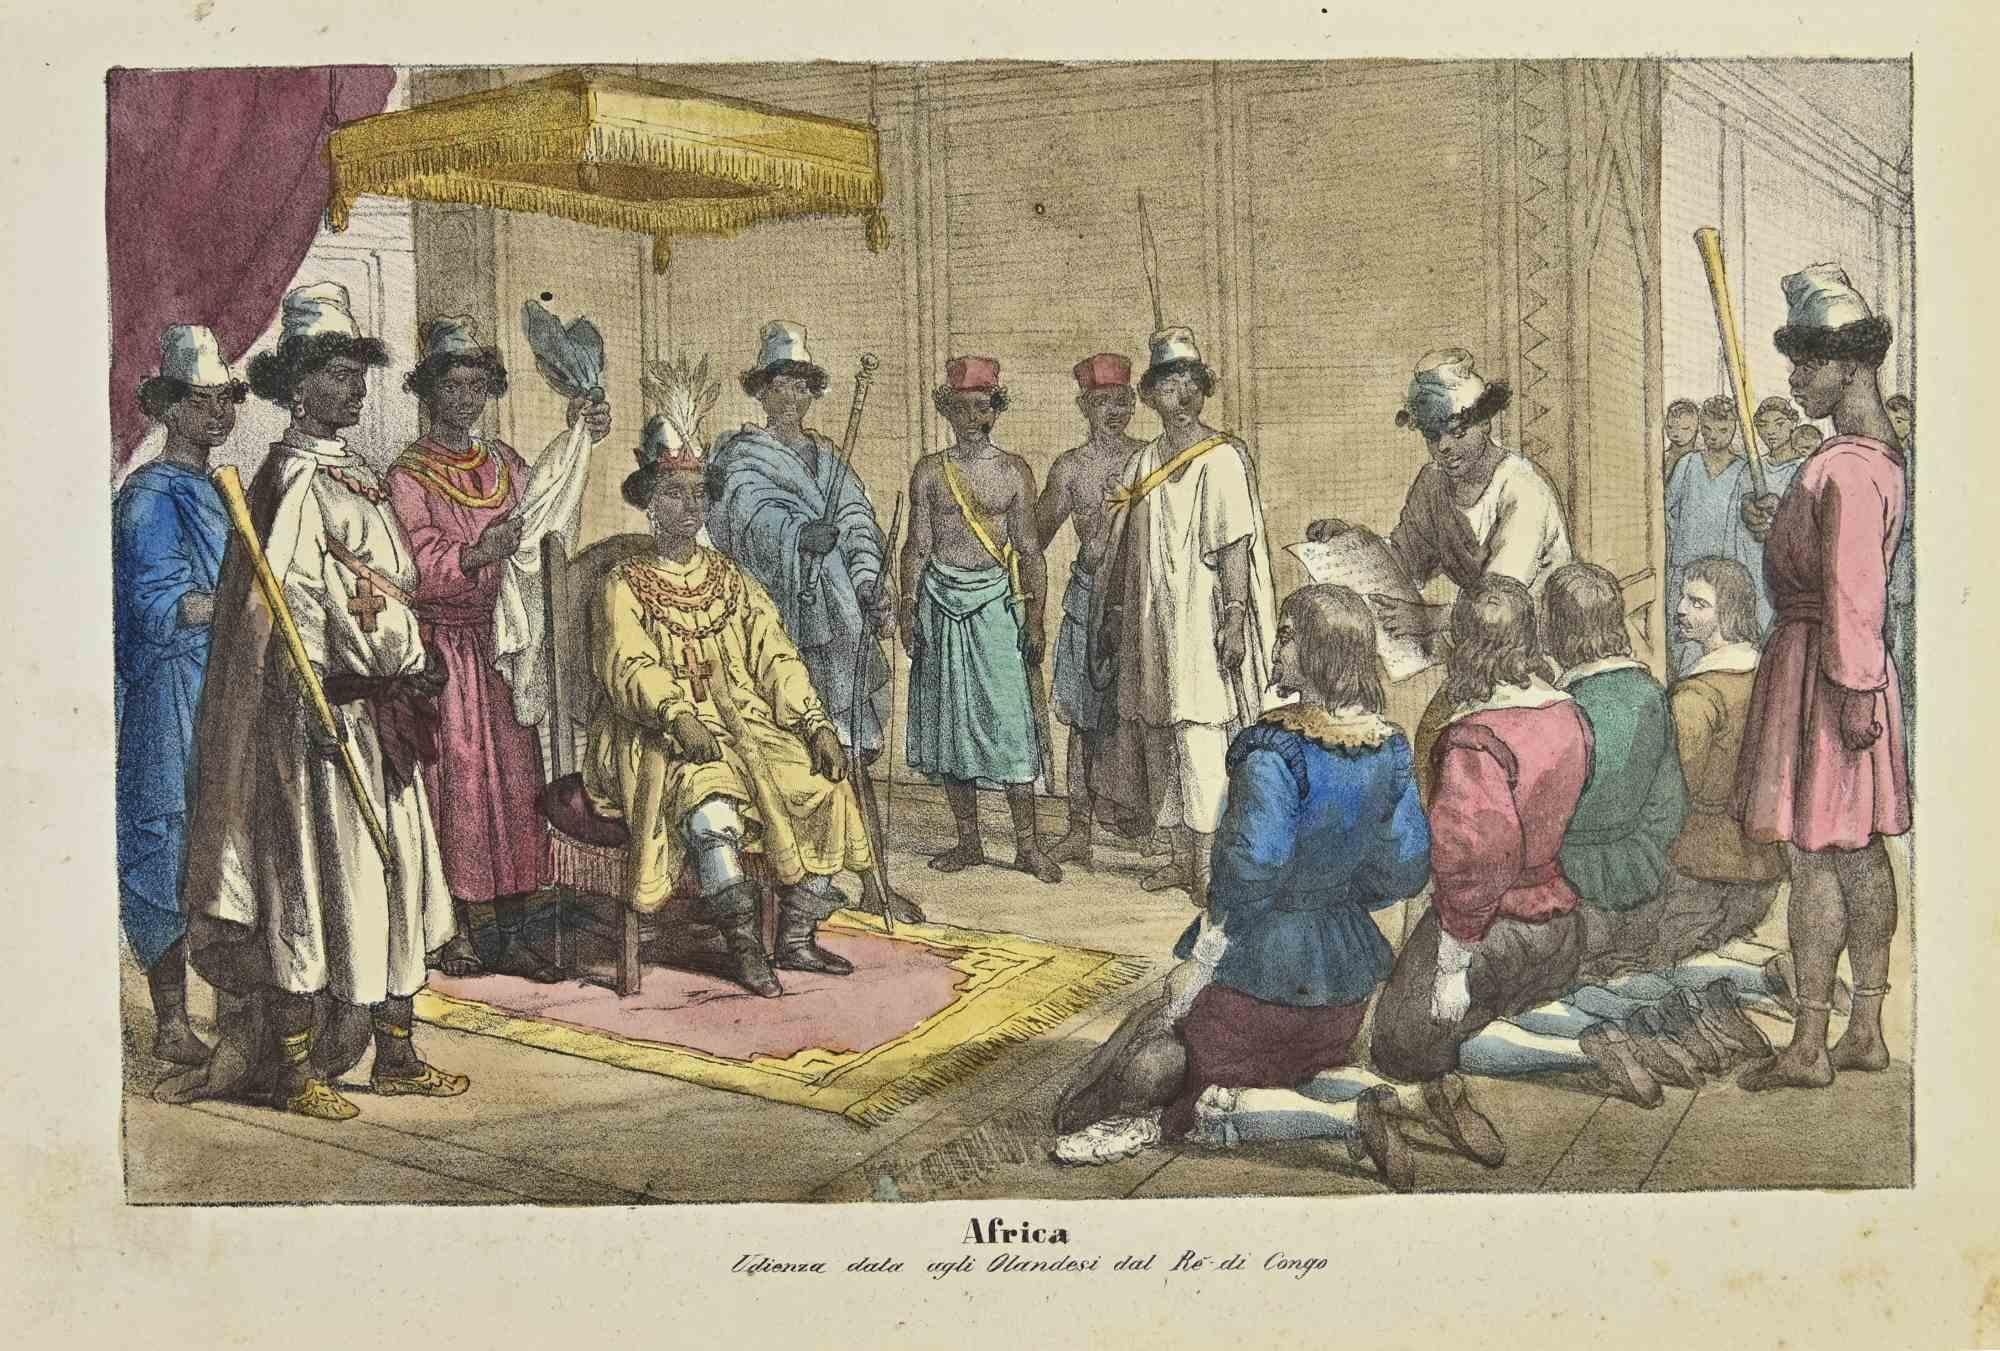 Antiguas costumbres africanas - Litografía de Auguste Wahlen - 1844